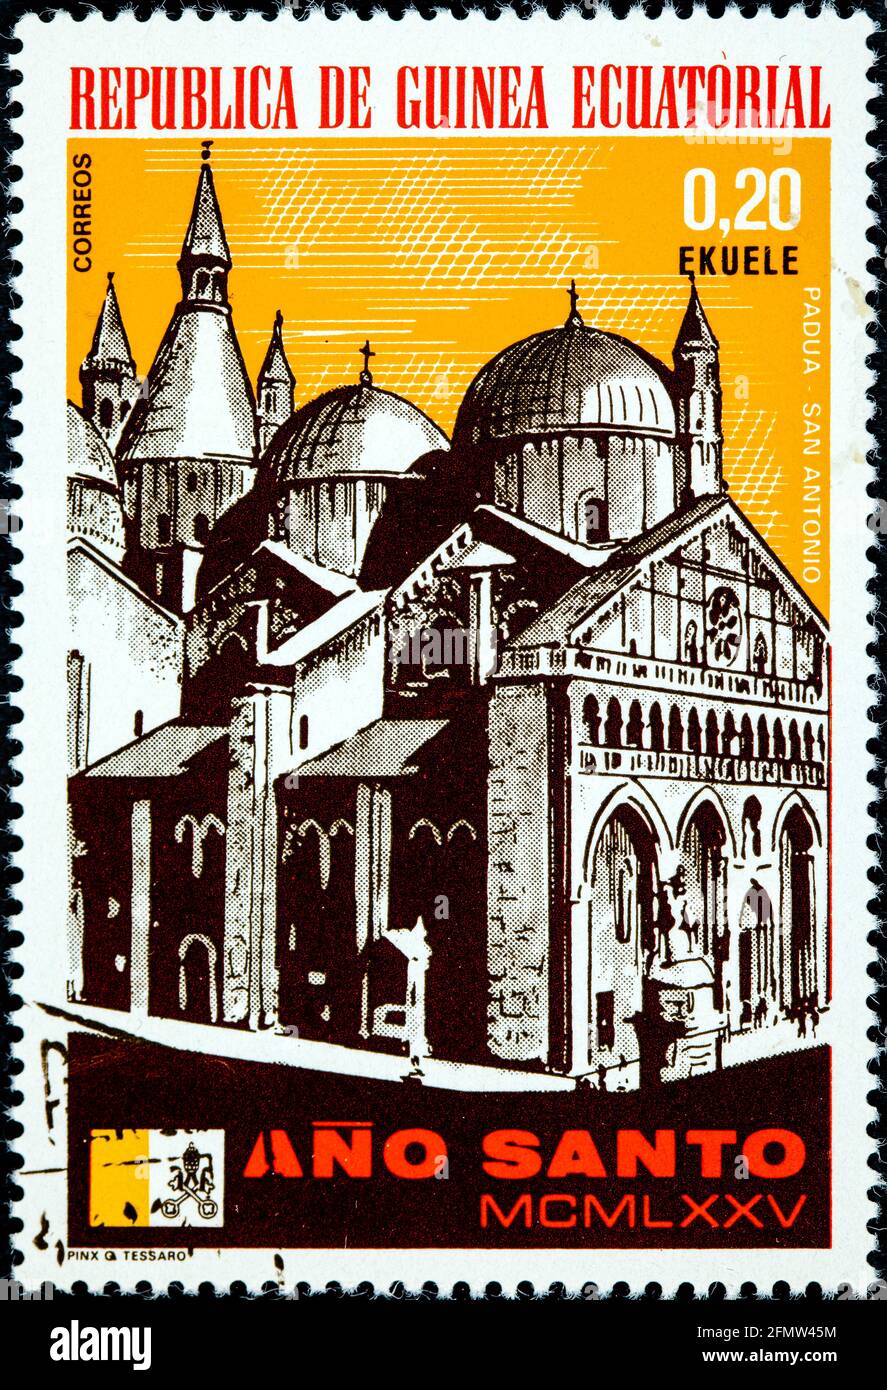 GUINÉE ÉQUATORIALE - VERS 1975: Un timbre imprimé en Guinée équatoriale, année Sainte montre Padoue, le Duomo Circa 1975 Banque D'Images